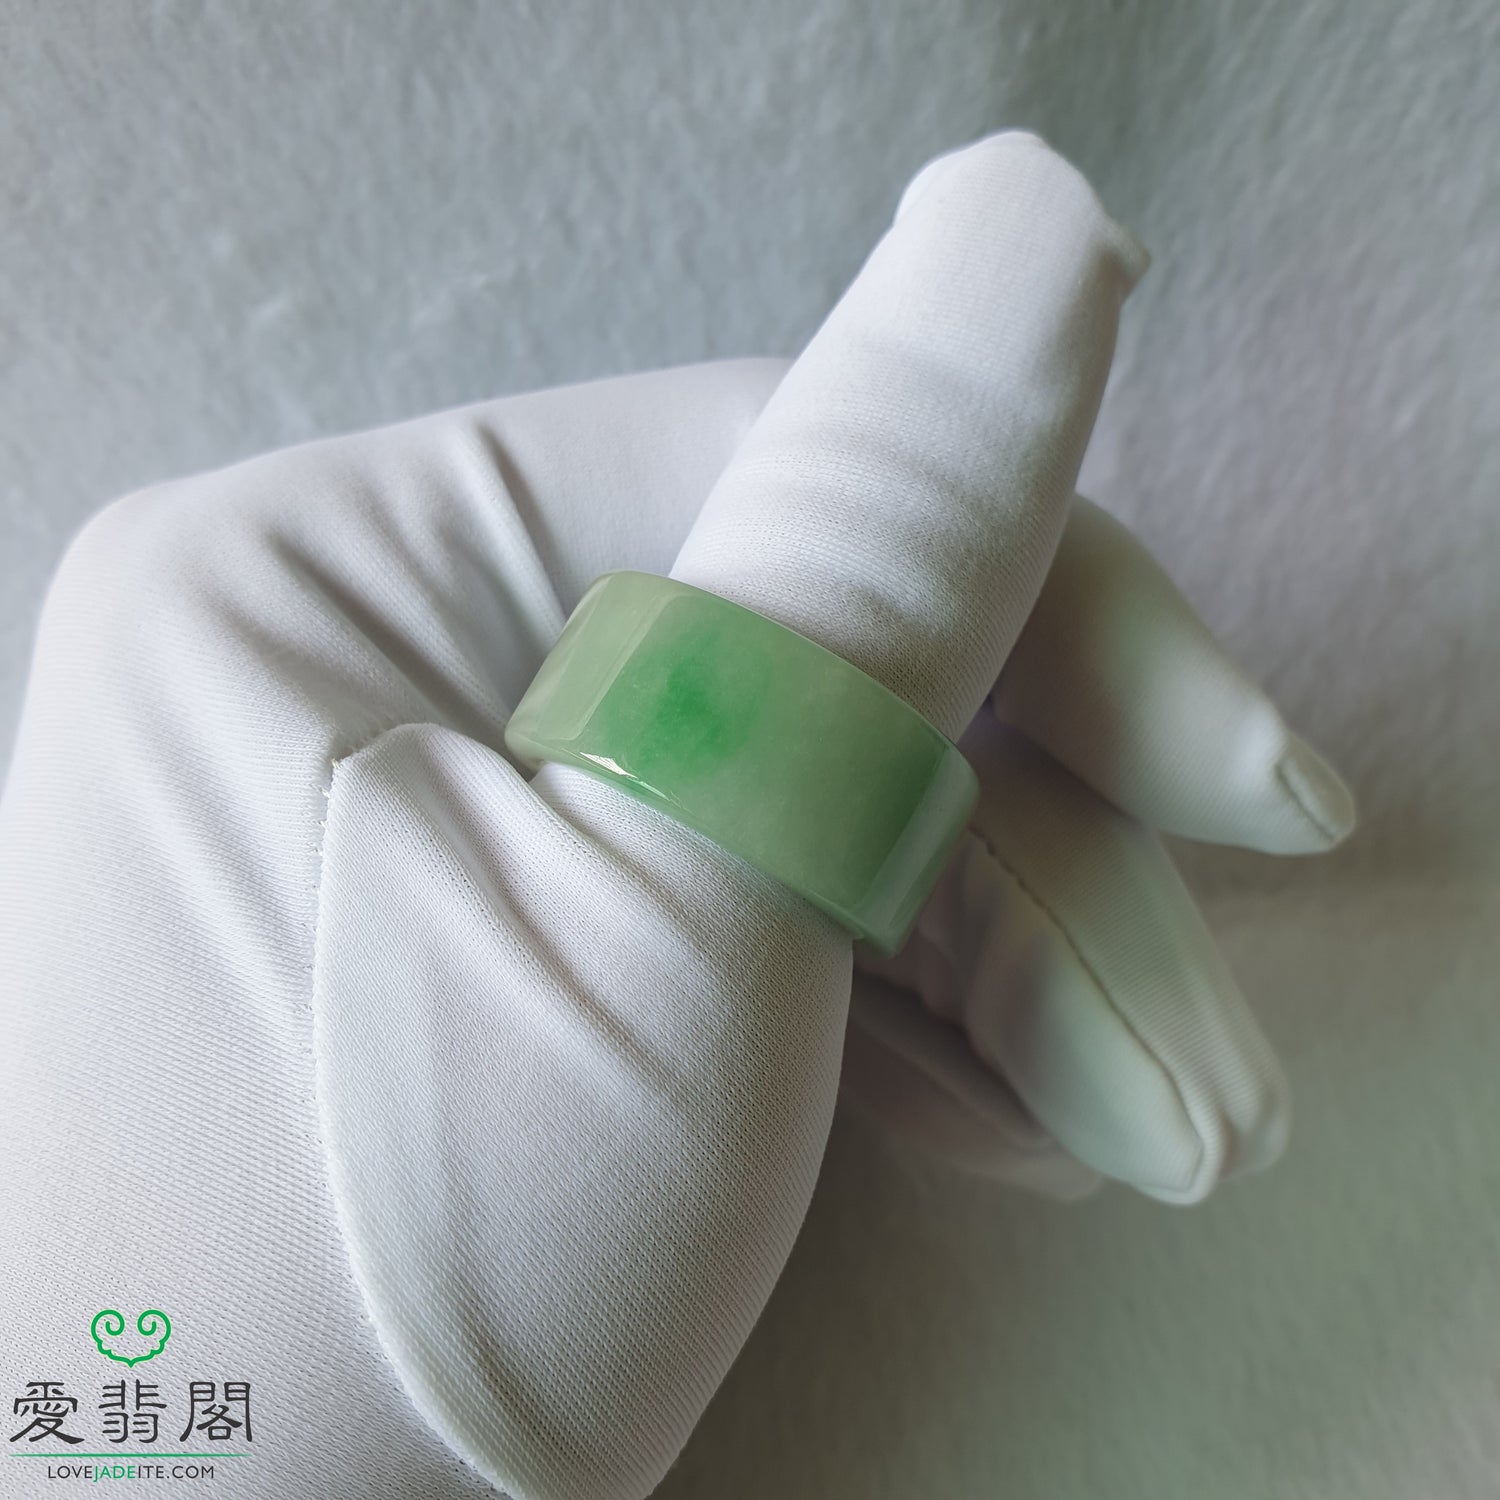 CHINA FOLK Traditional Jade Carving- Green Jade Thumb Ring - AliExpress